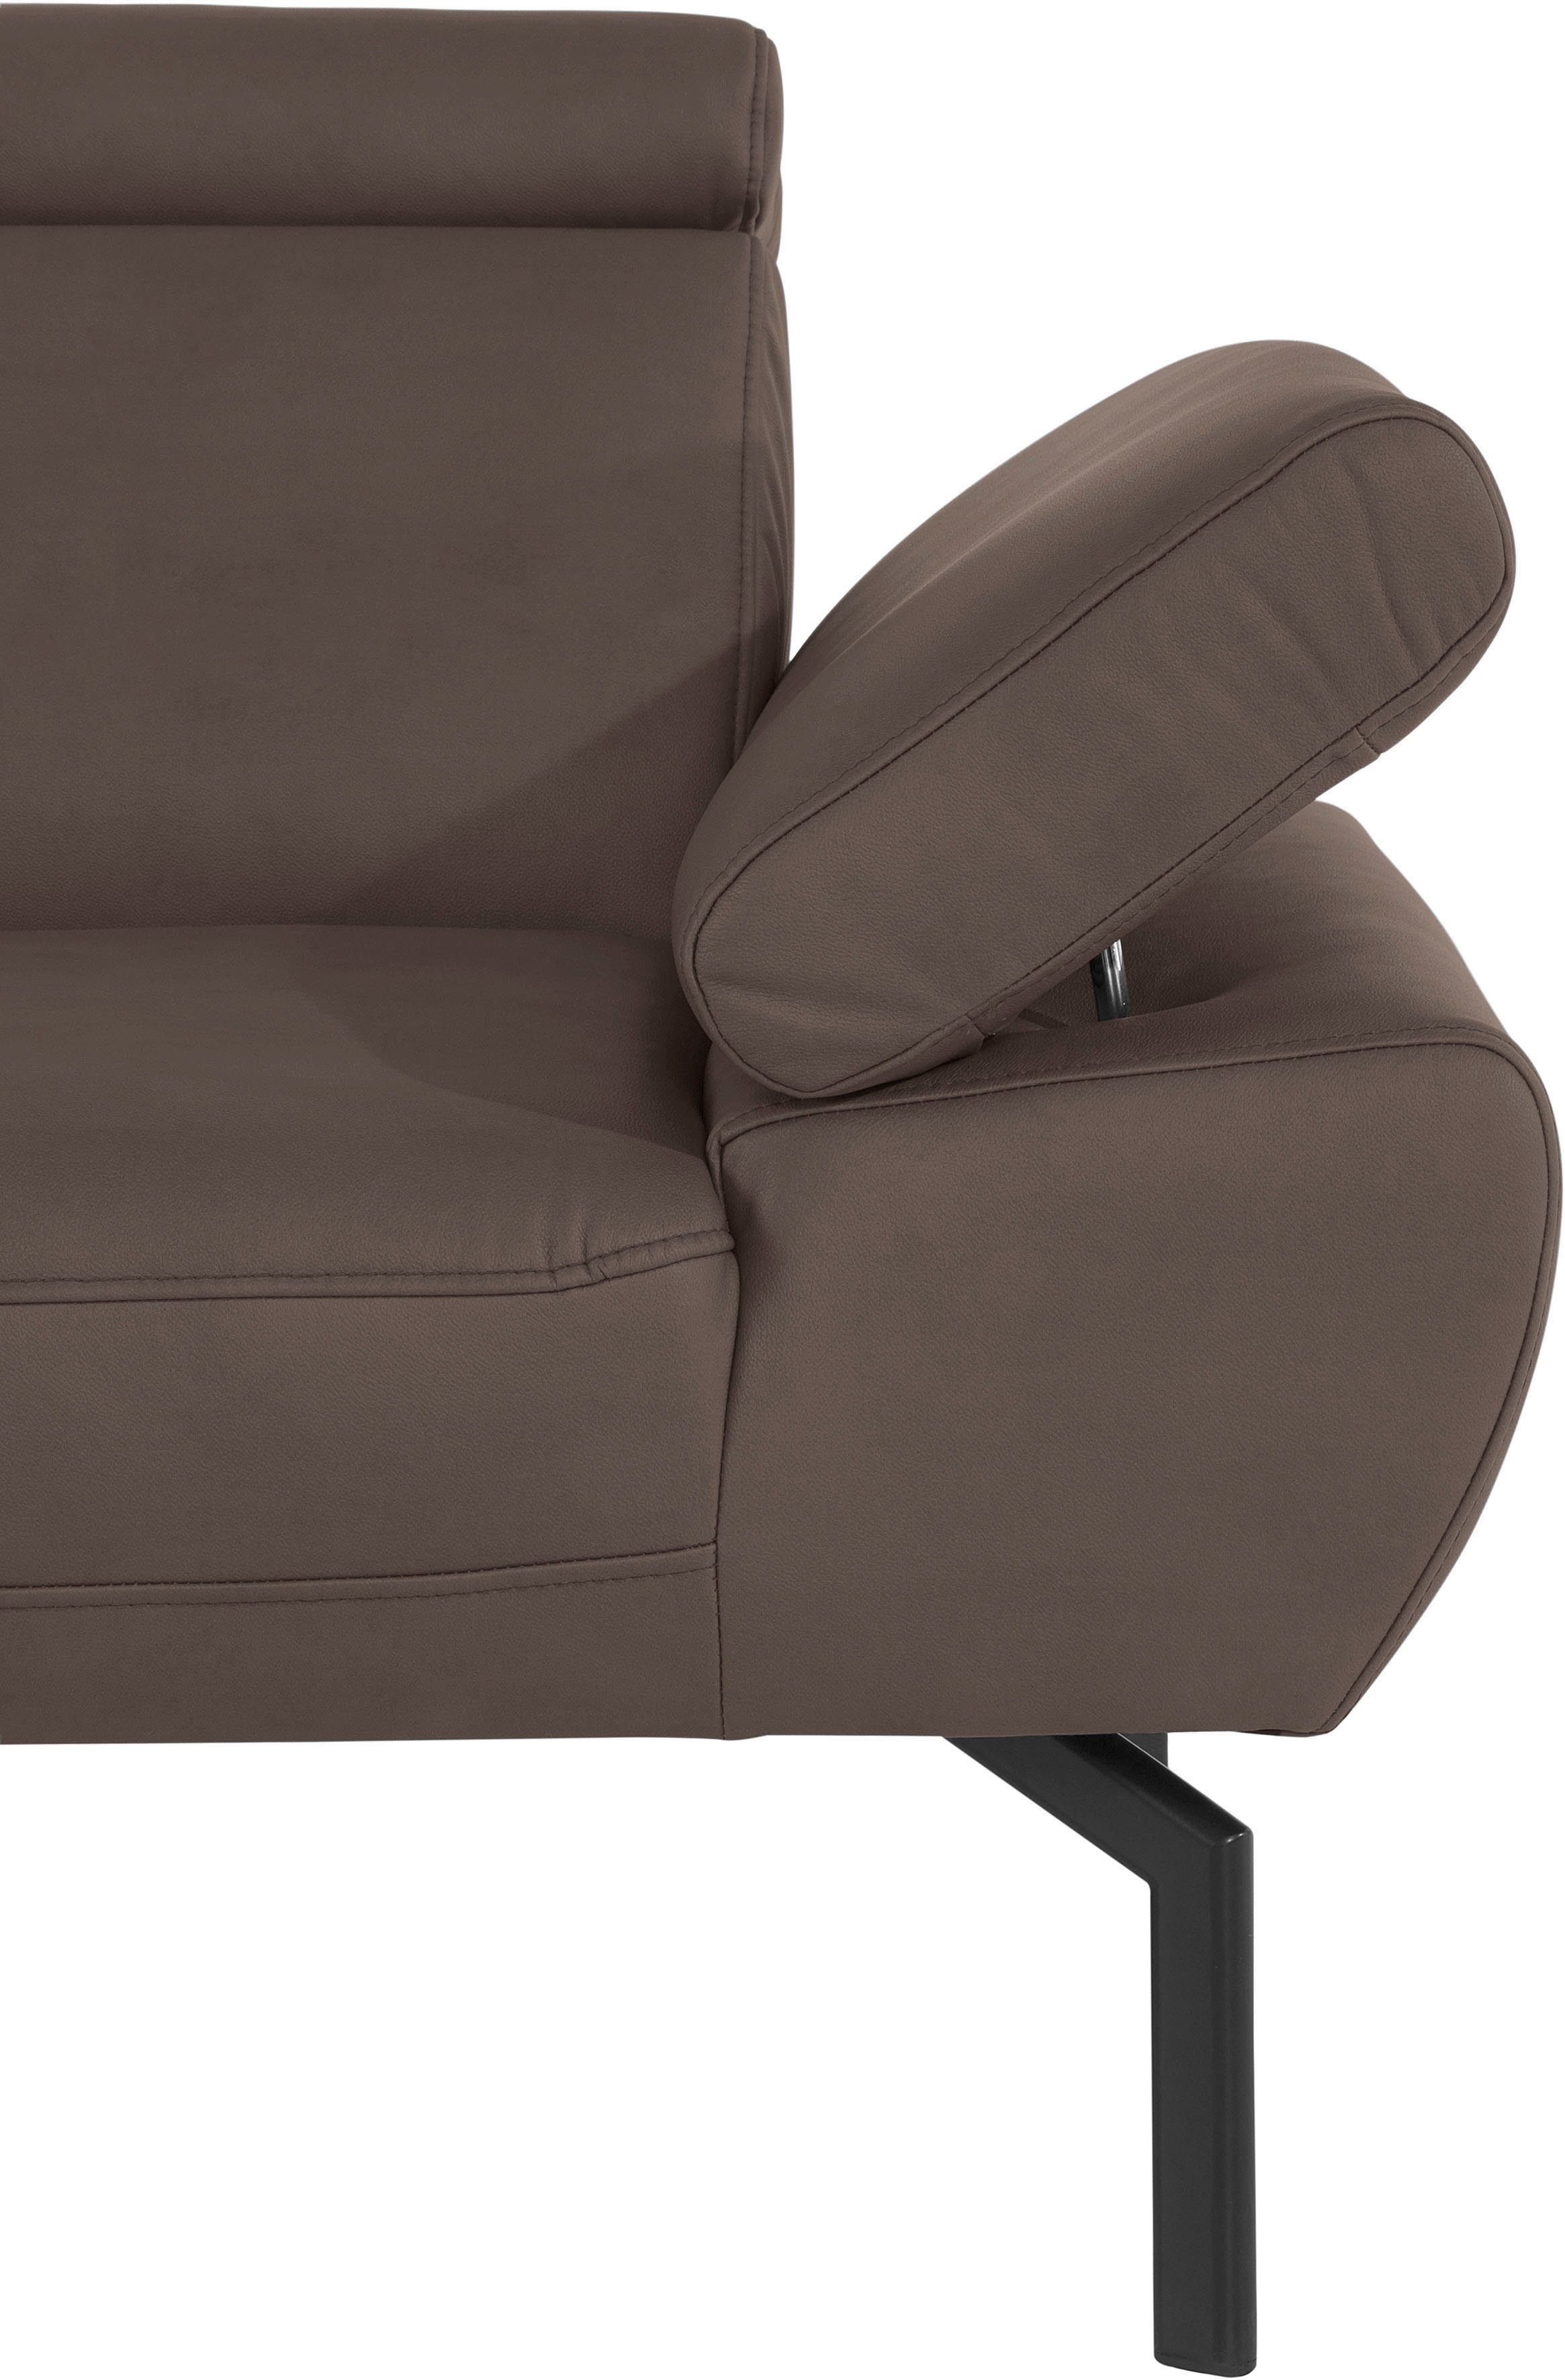 of Places Lederoptik Luxus-Microfaser Style Luxus, 2-Sitzer in wahlweise mit Rückenverstellung, Trapino